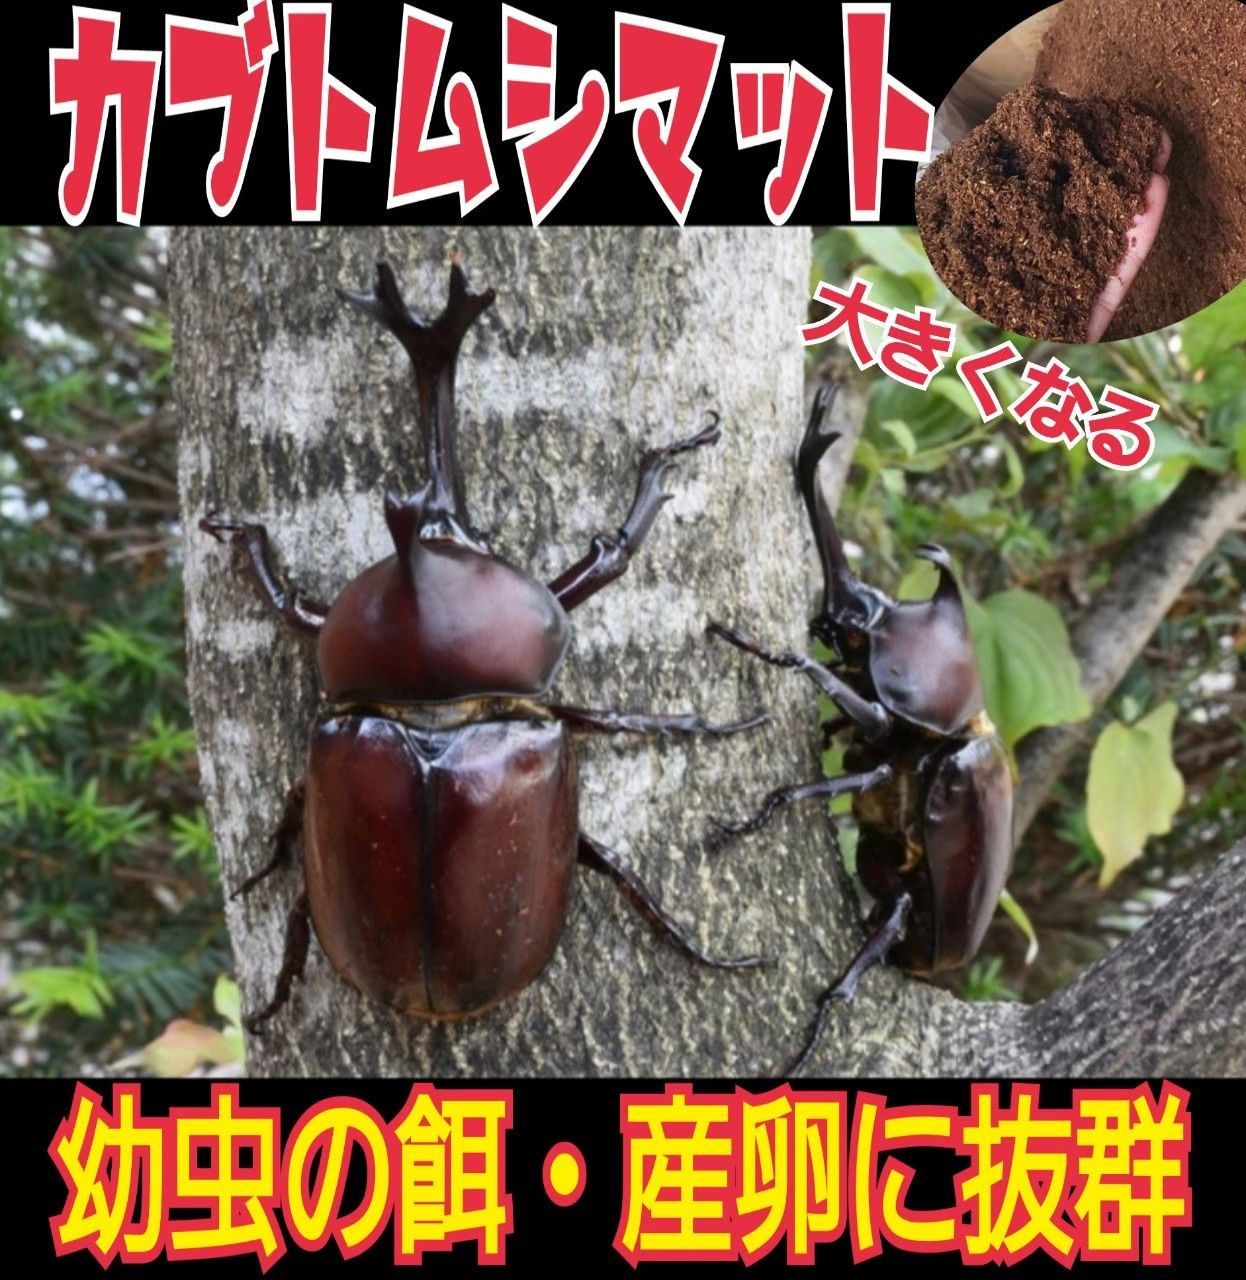 カブトムシ幼虫の餌☆ケース入りプレミアム発酵マット【8セット